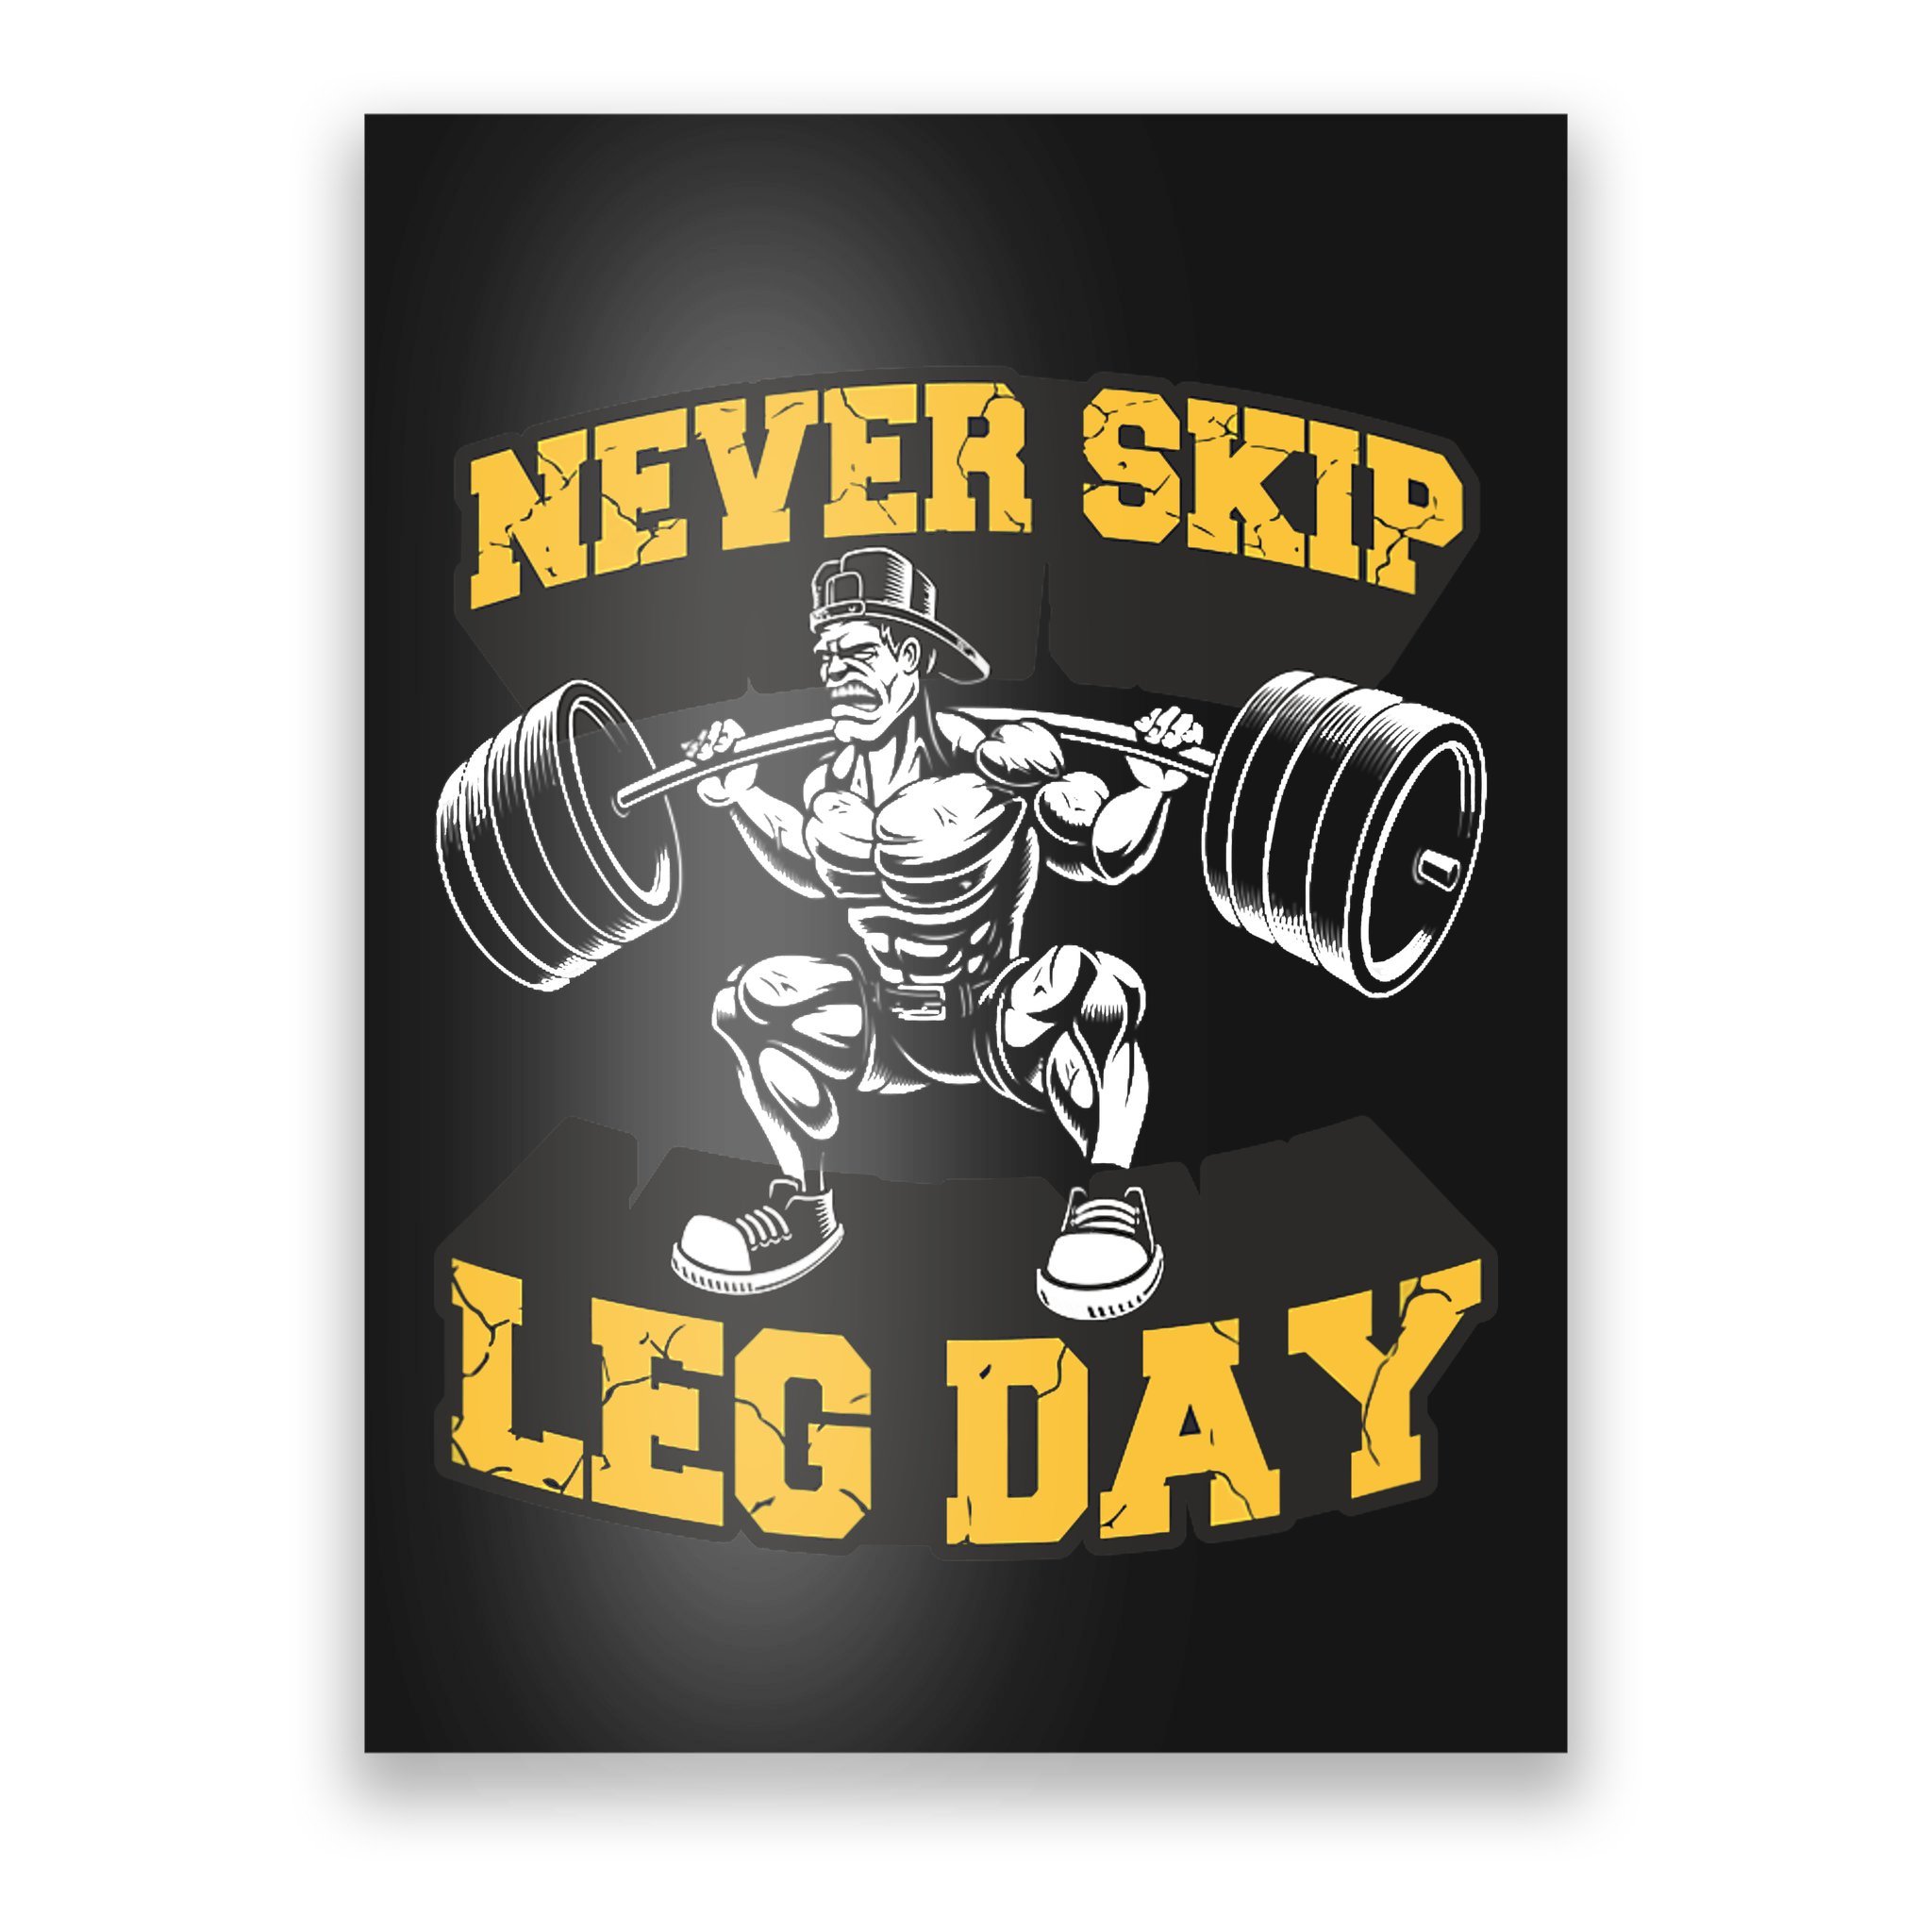 skip leg day